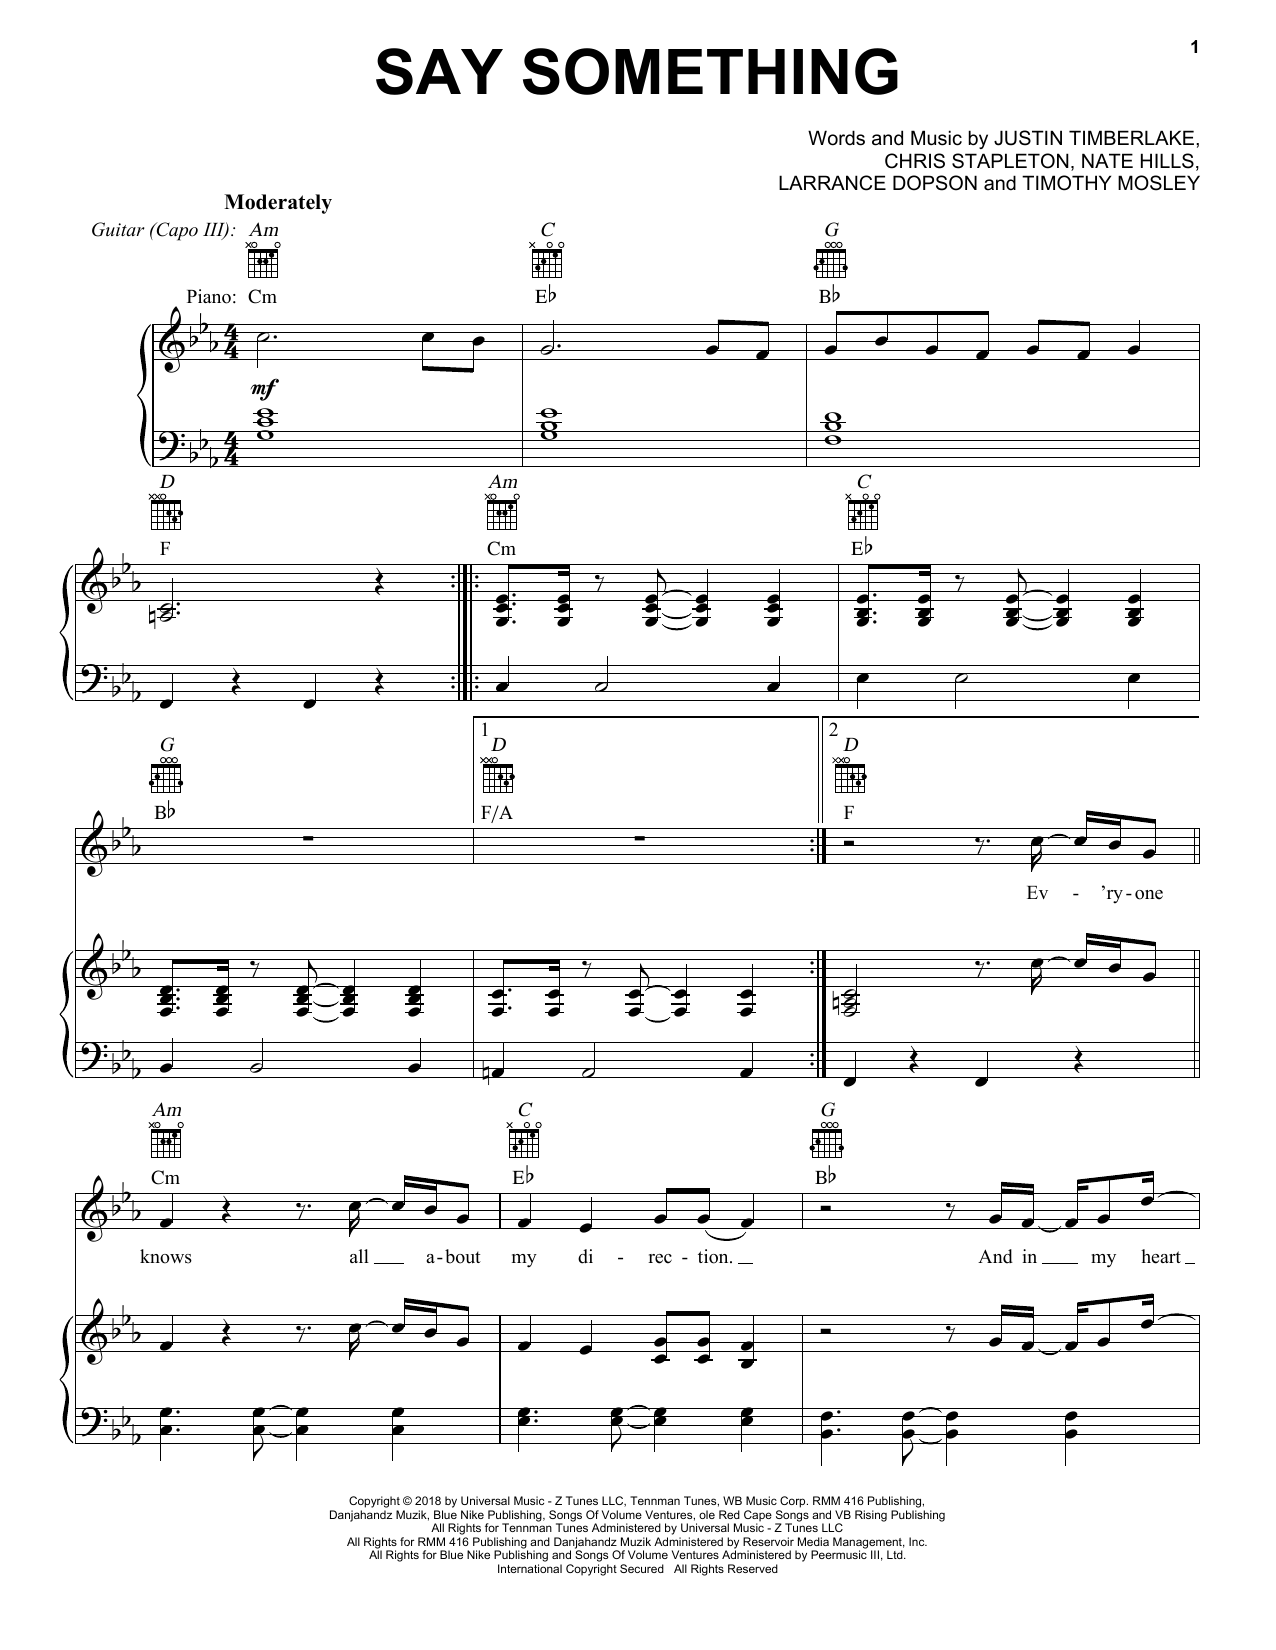 Justin Timberlake Say Something (feat. Chris Stapleton) Sheet Music Notes & Chords for Ukulele - Download or Print PDF